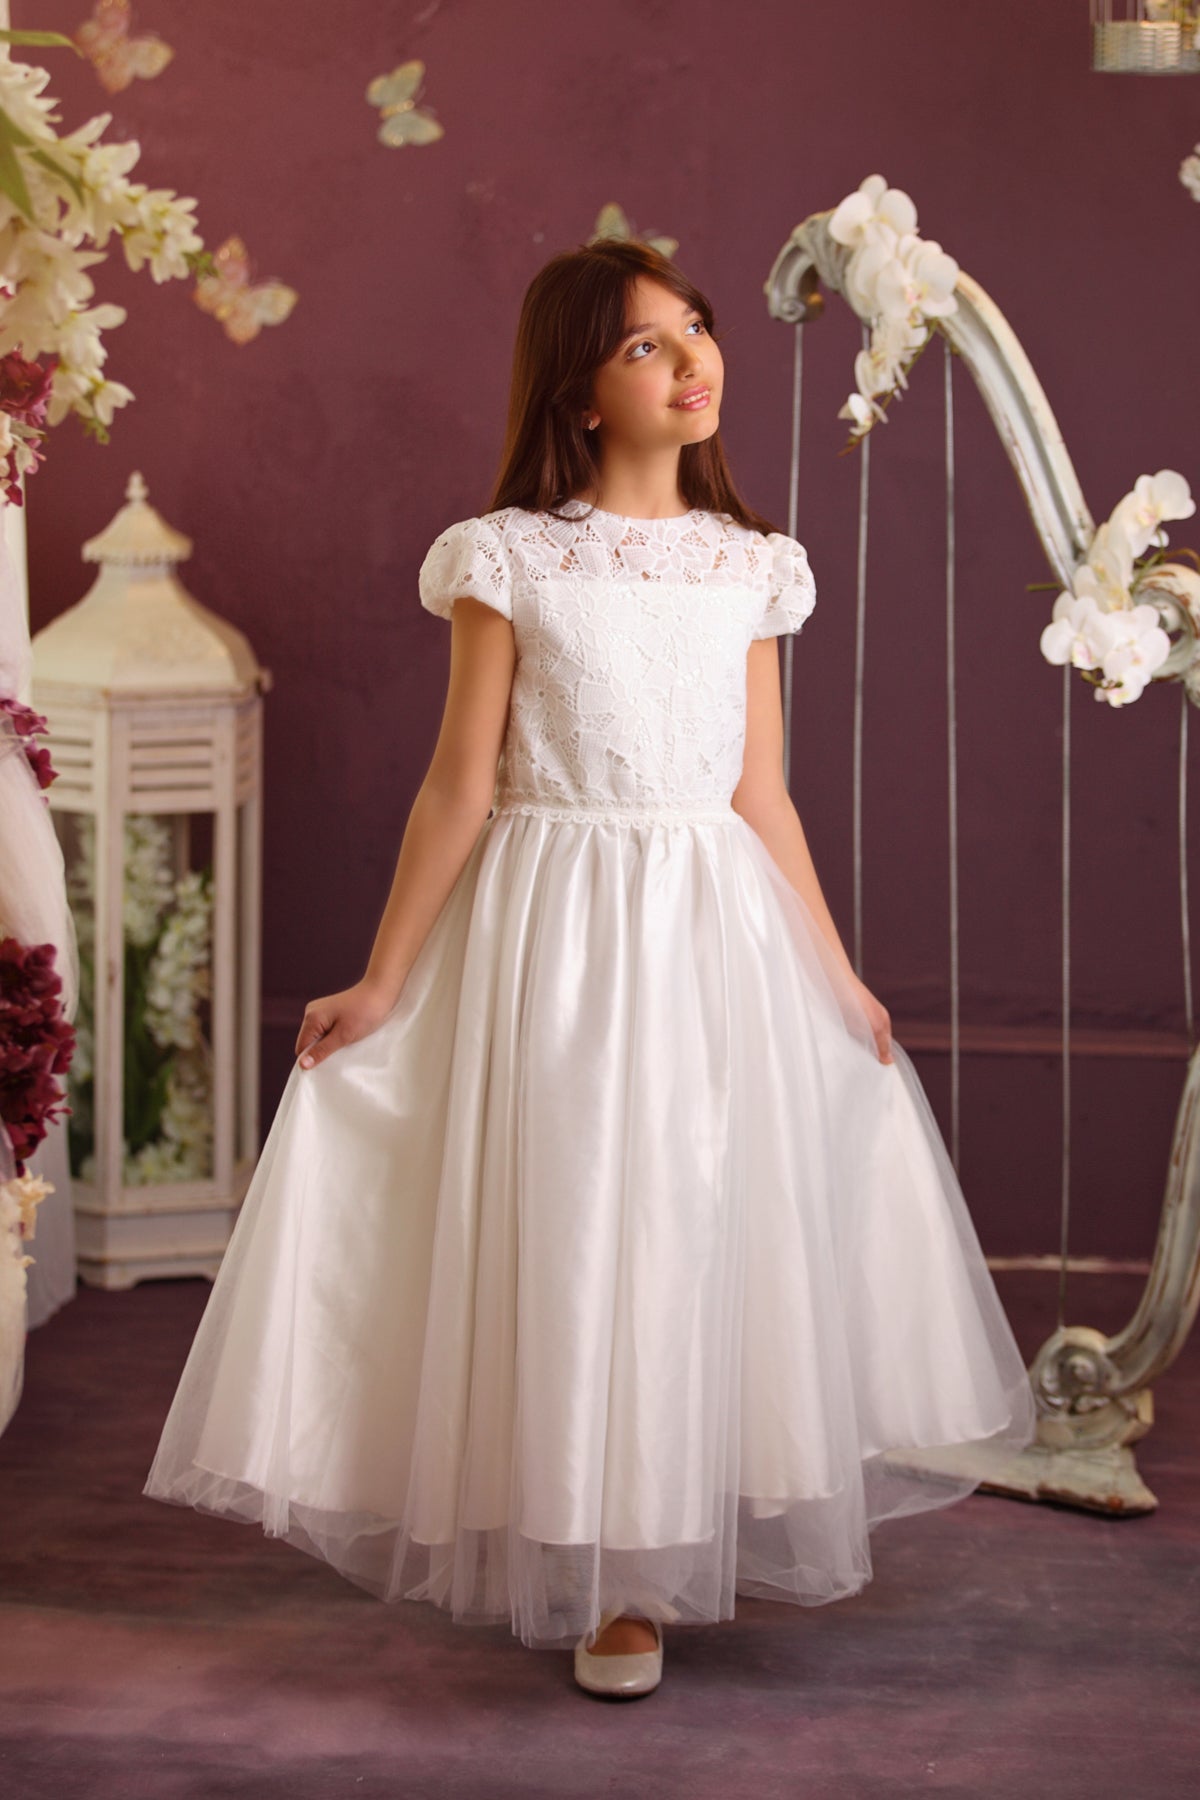 Buy AMK Girls First Communion Dress - Baptism Holy Communion Fancy Flower  Girl White Dress Online at desertcartINDIA